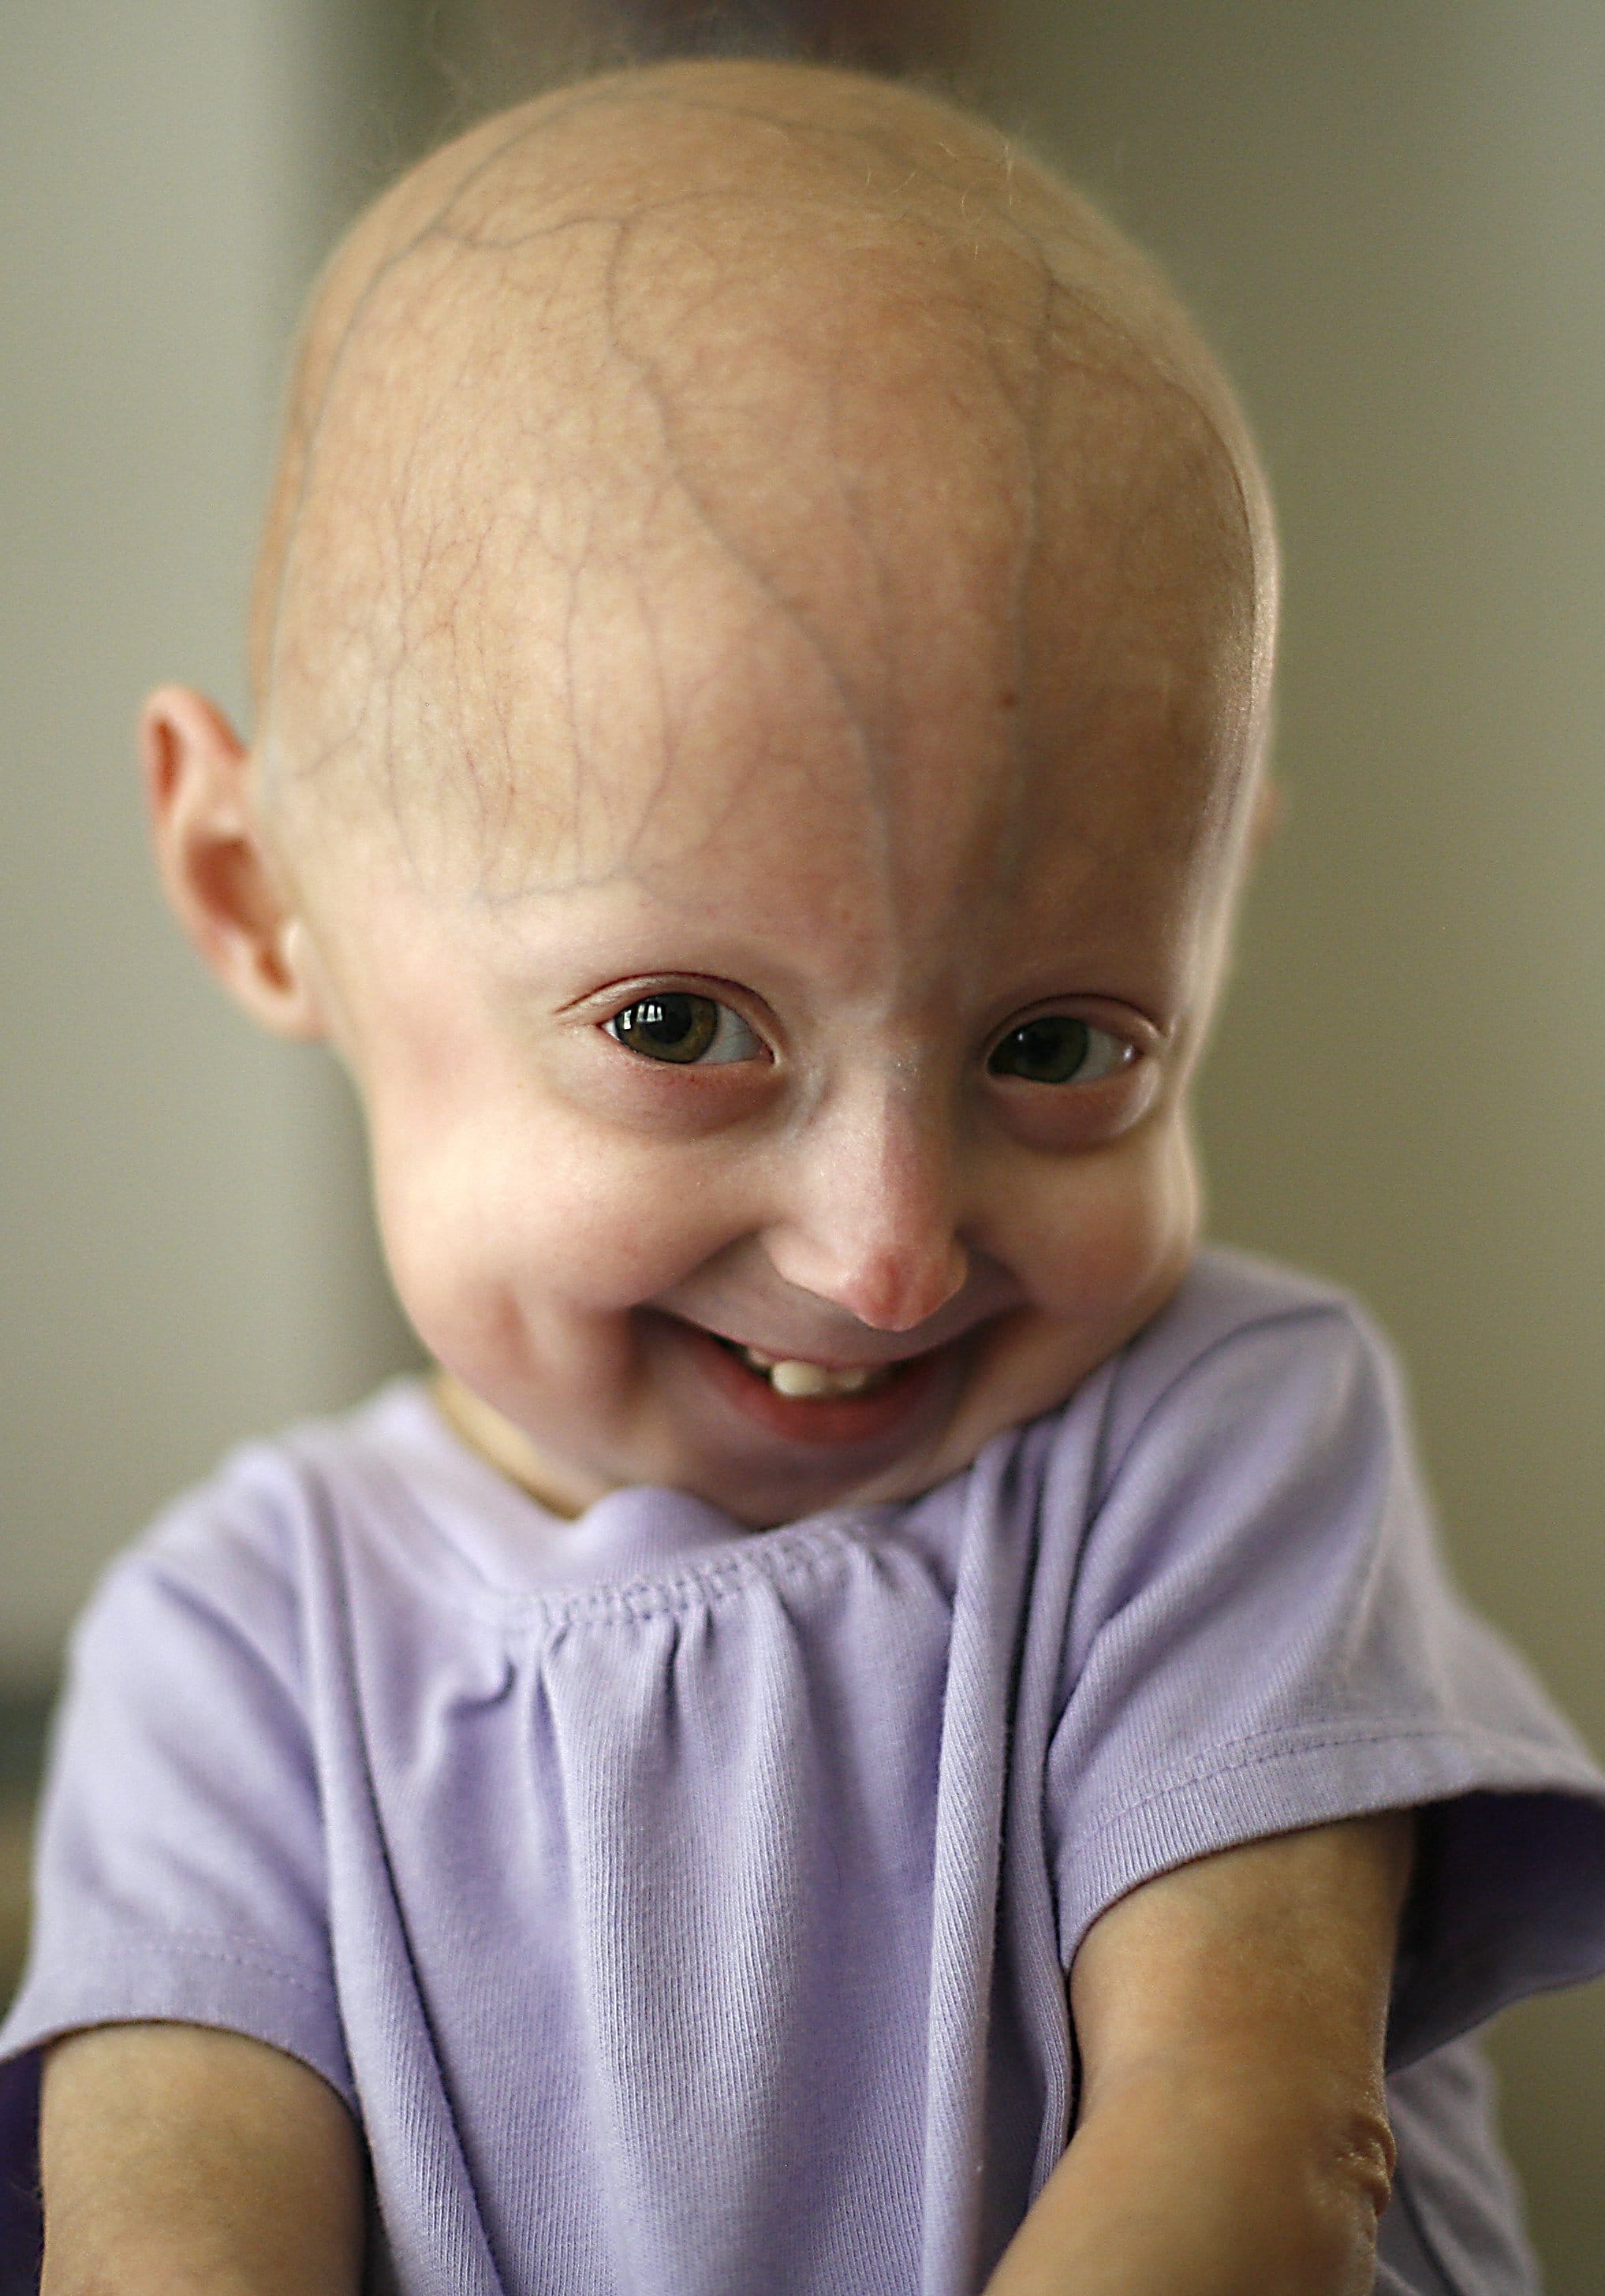 progeria research paper